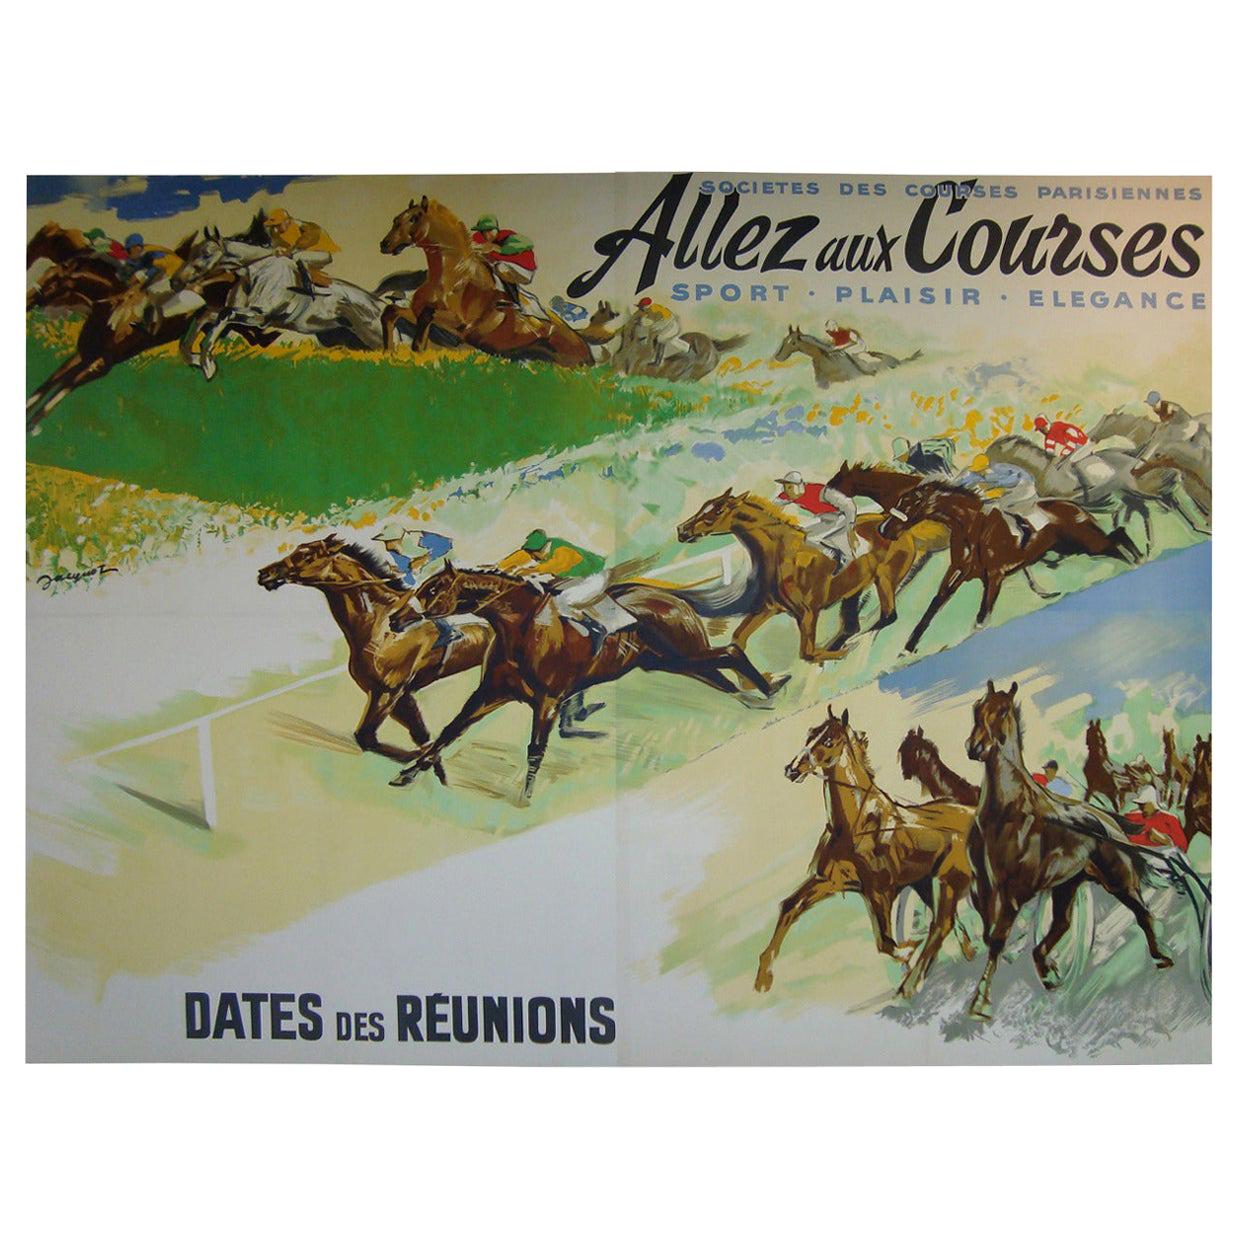 Affiche murale géante de course de chevaux par Jacquot, datant des années 1930 environ